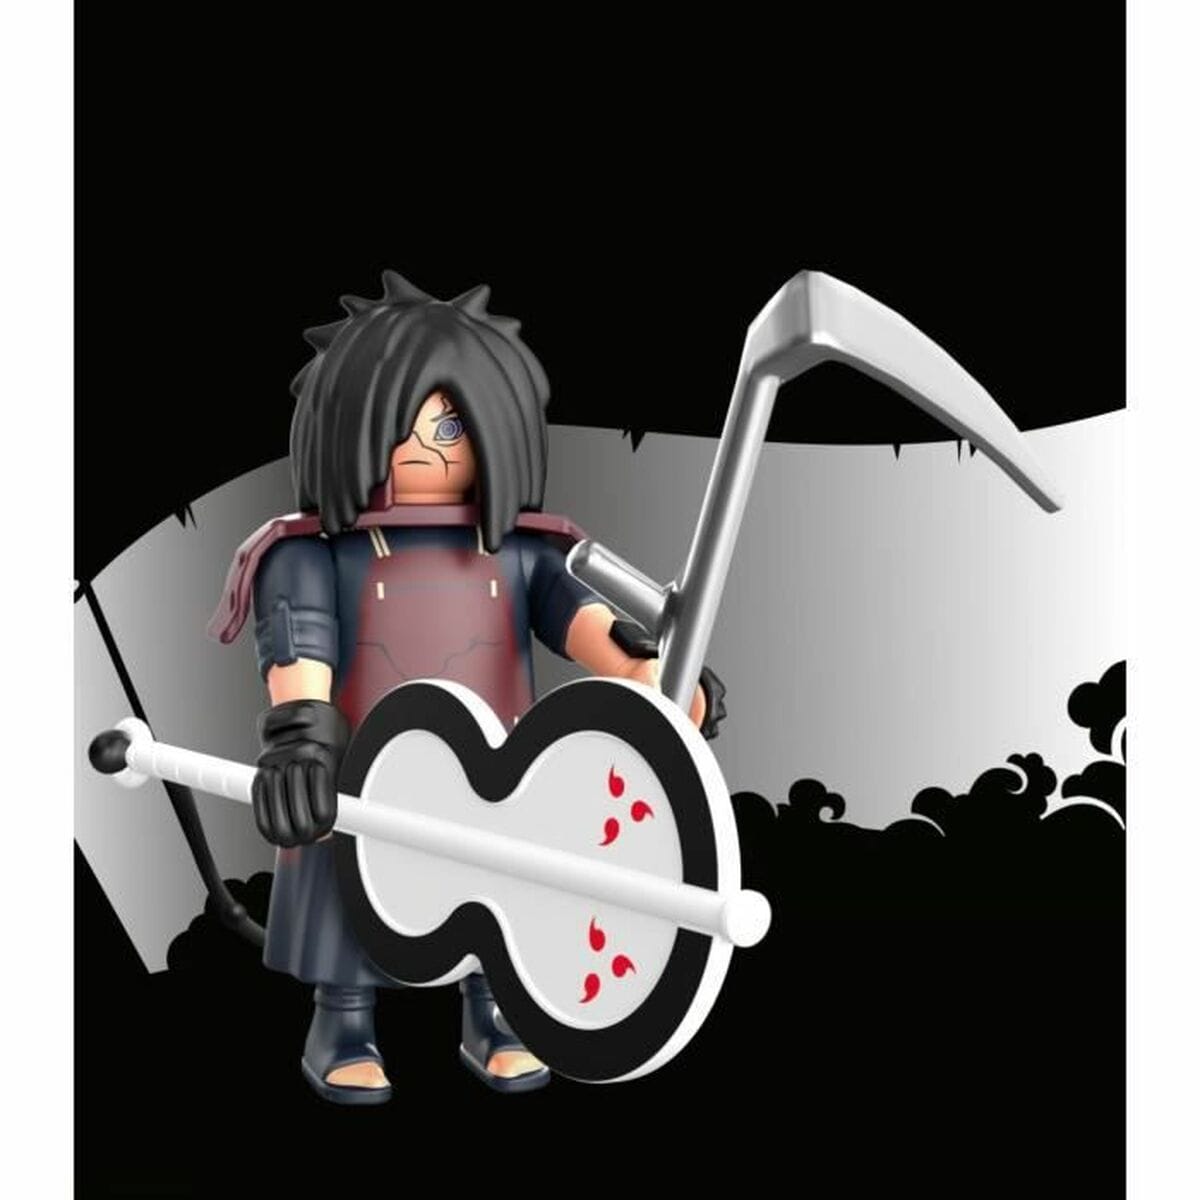 Playmobil Spielzeug | Kostüme > Spielzeug und Spiele > Action-Figuren Figur Playmobil Naruto Shippuden - Madara 71104 7 Stücke